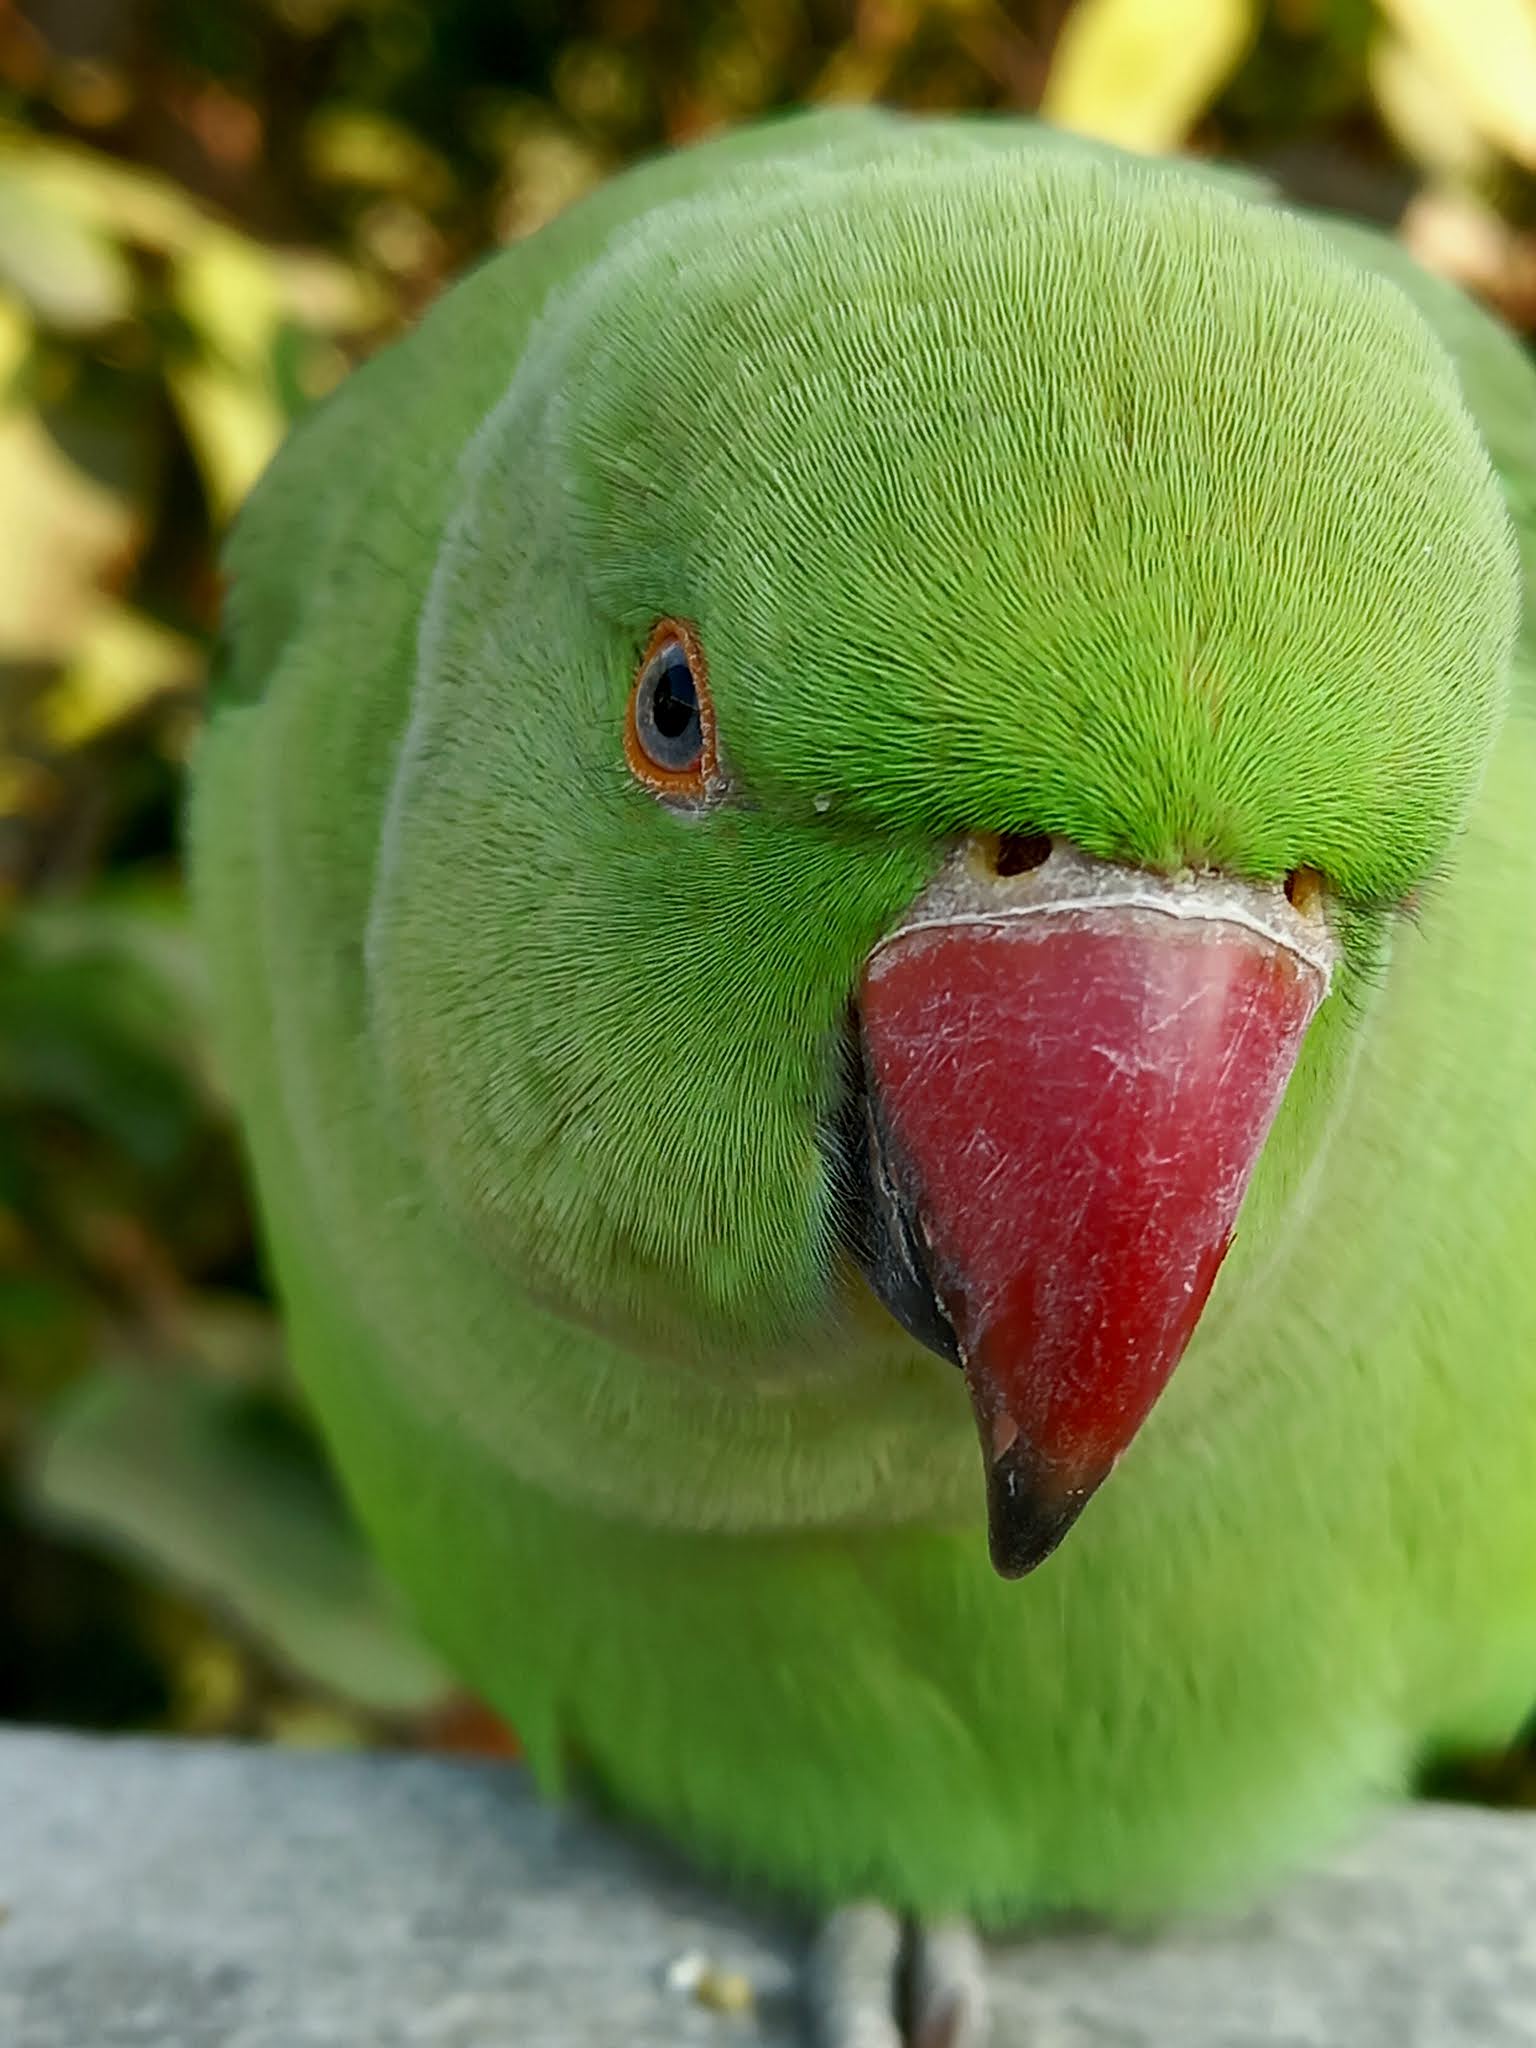 Parrot Image